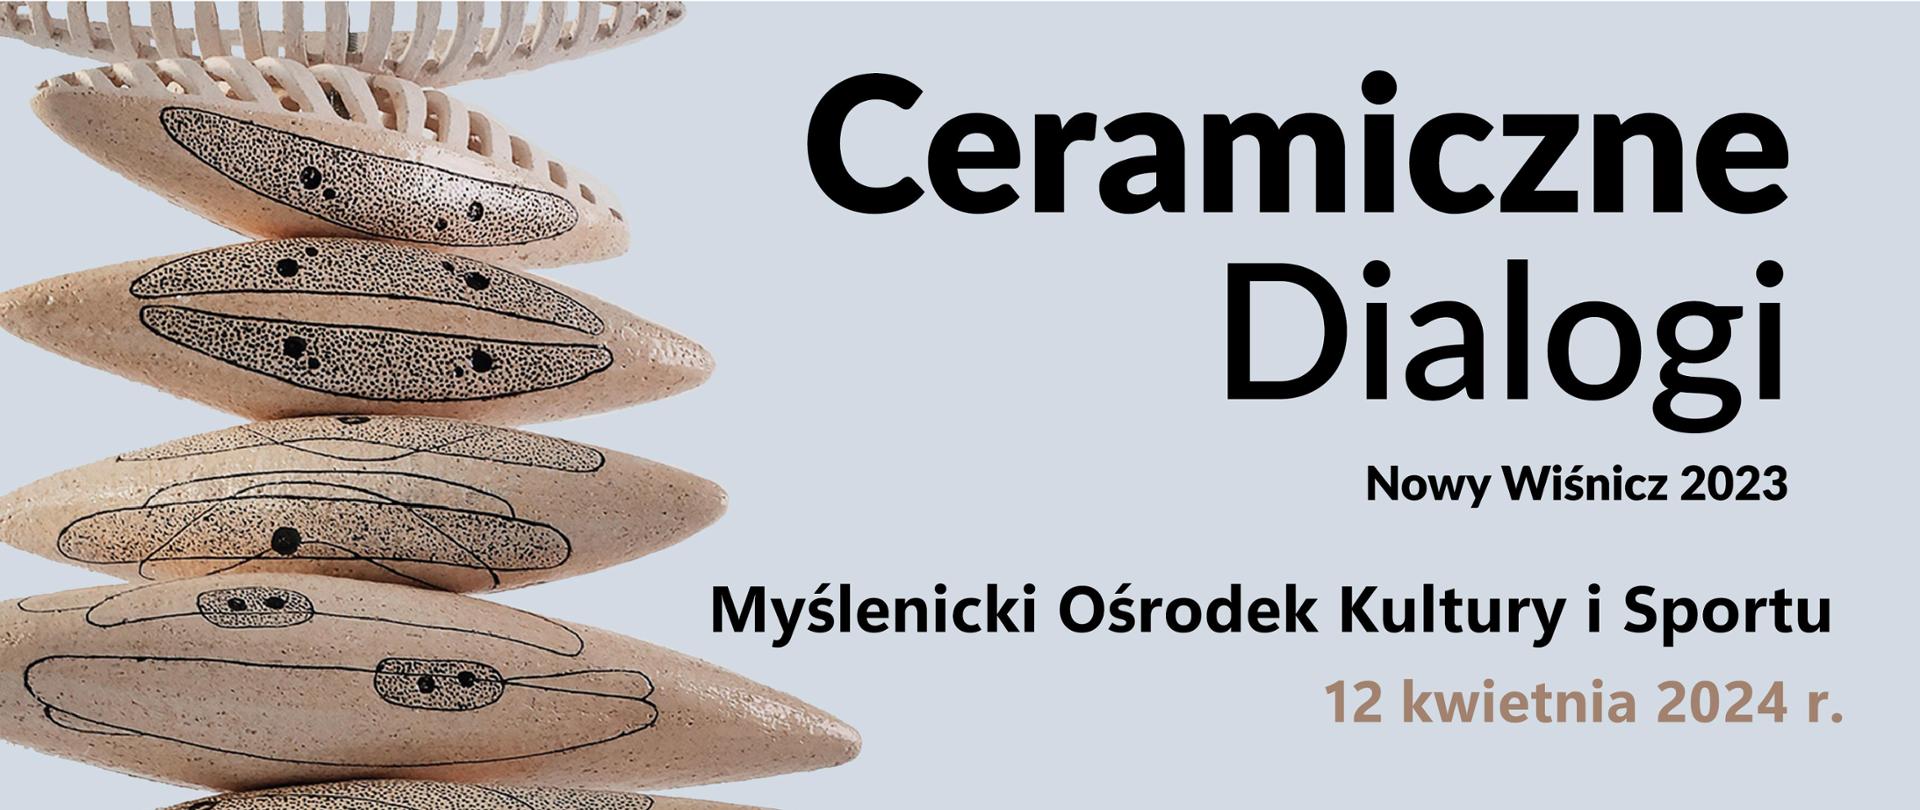 Z lewej fragment rzeźby ceramicznej z prawej napis Ceramiczne Dialogi Nowy Wiśnicz 2023 Myślenicki Ośrodek Kultury i Sportu 12 kwietnia 2024 r.